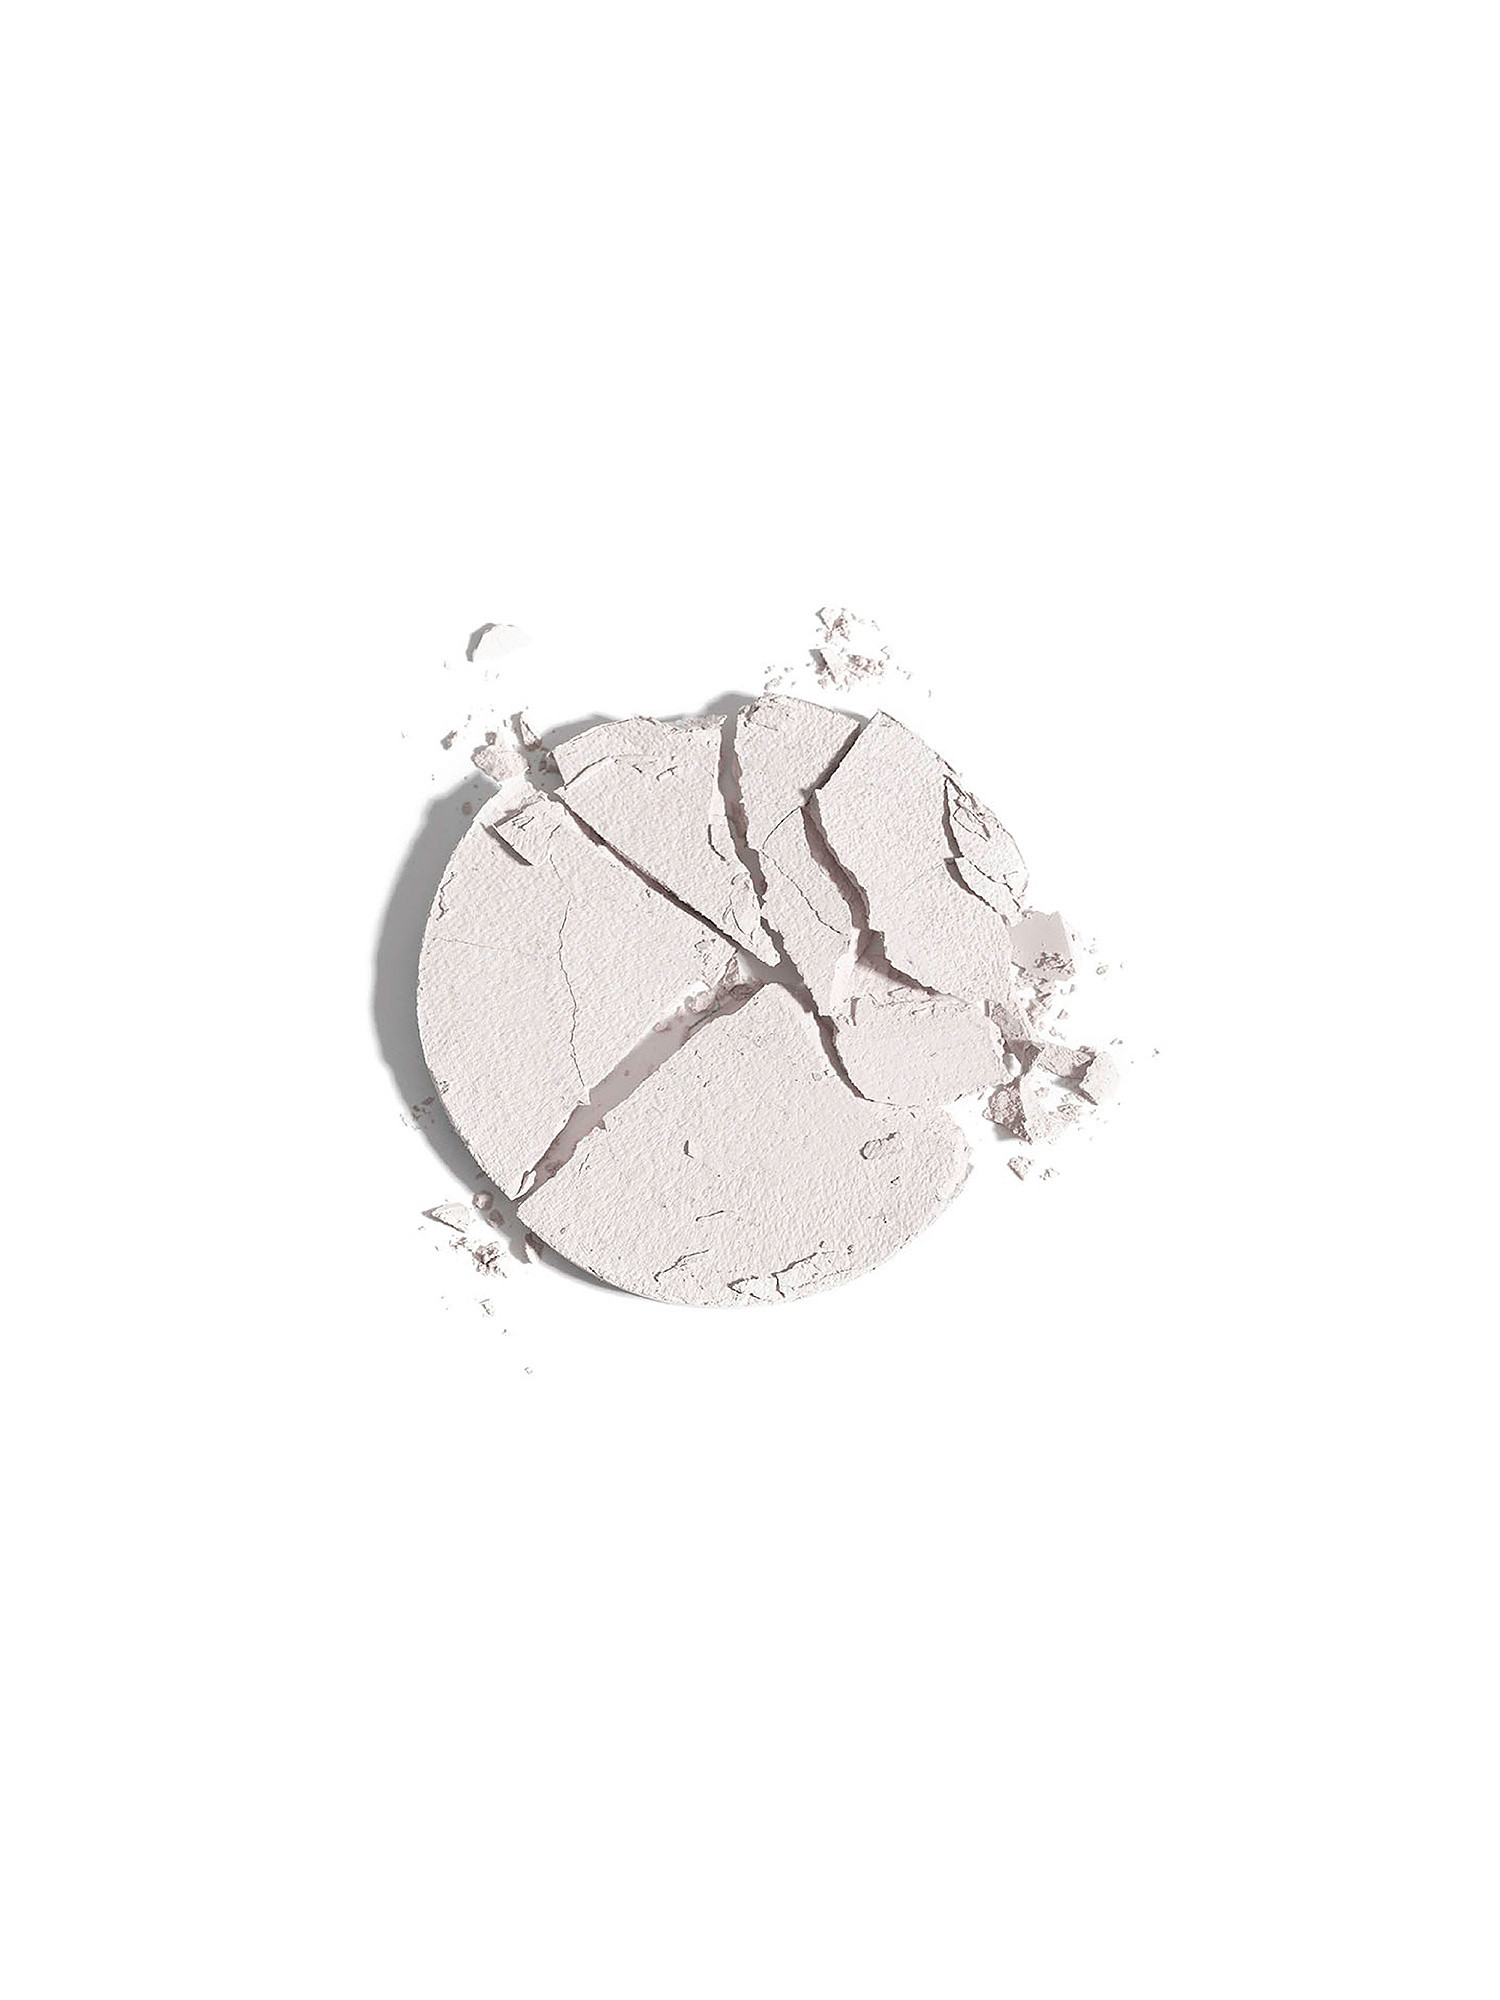 Makeupstudio Compact Matte Eye Powder - 151 optical white, White, large image number 1